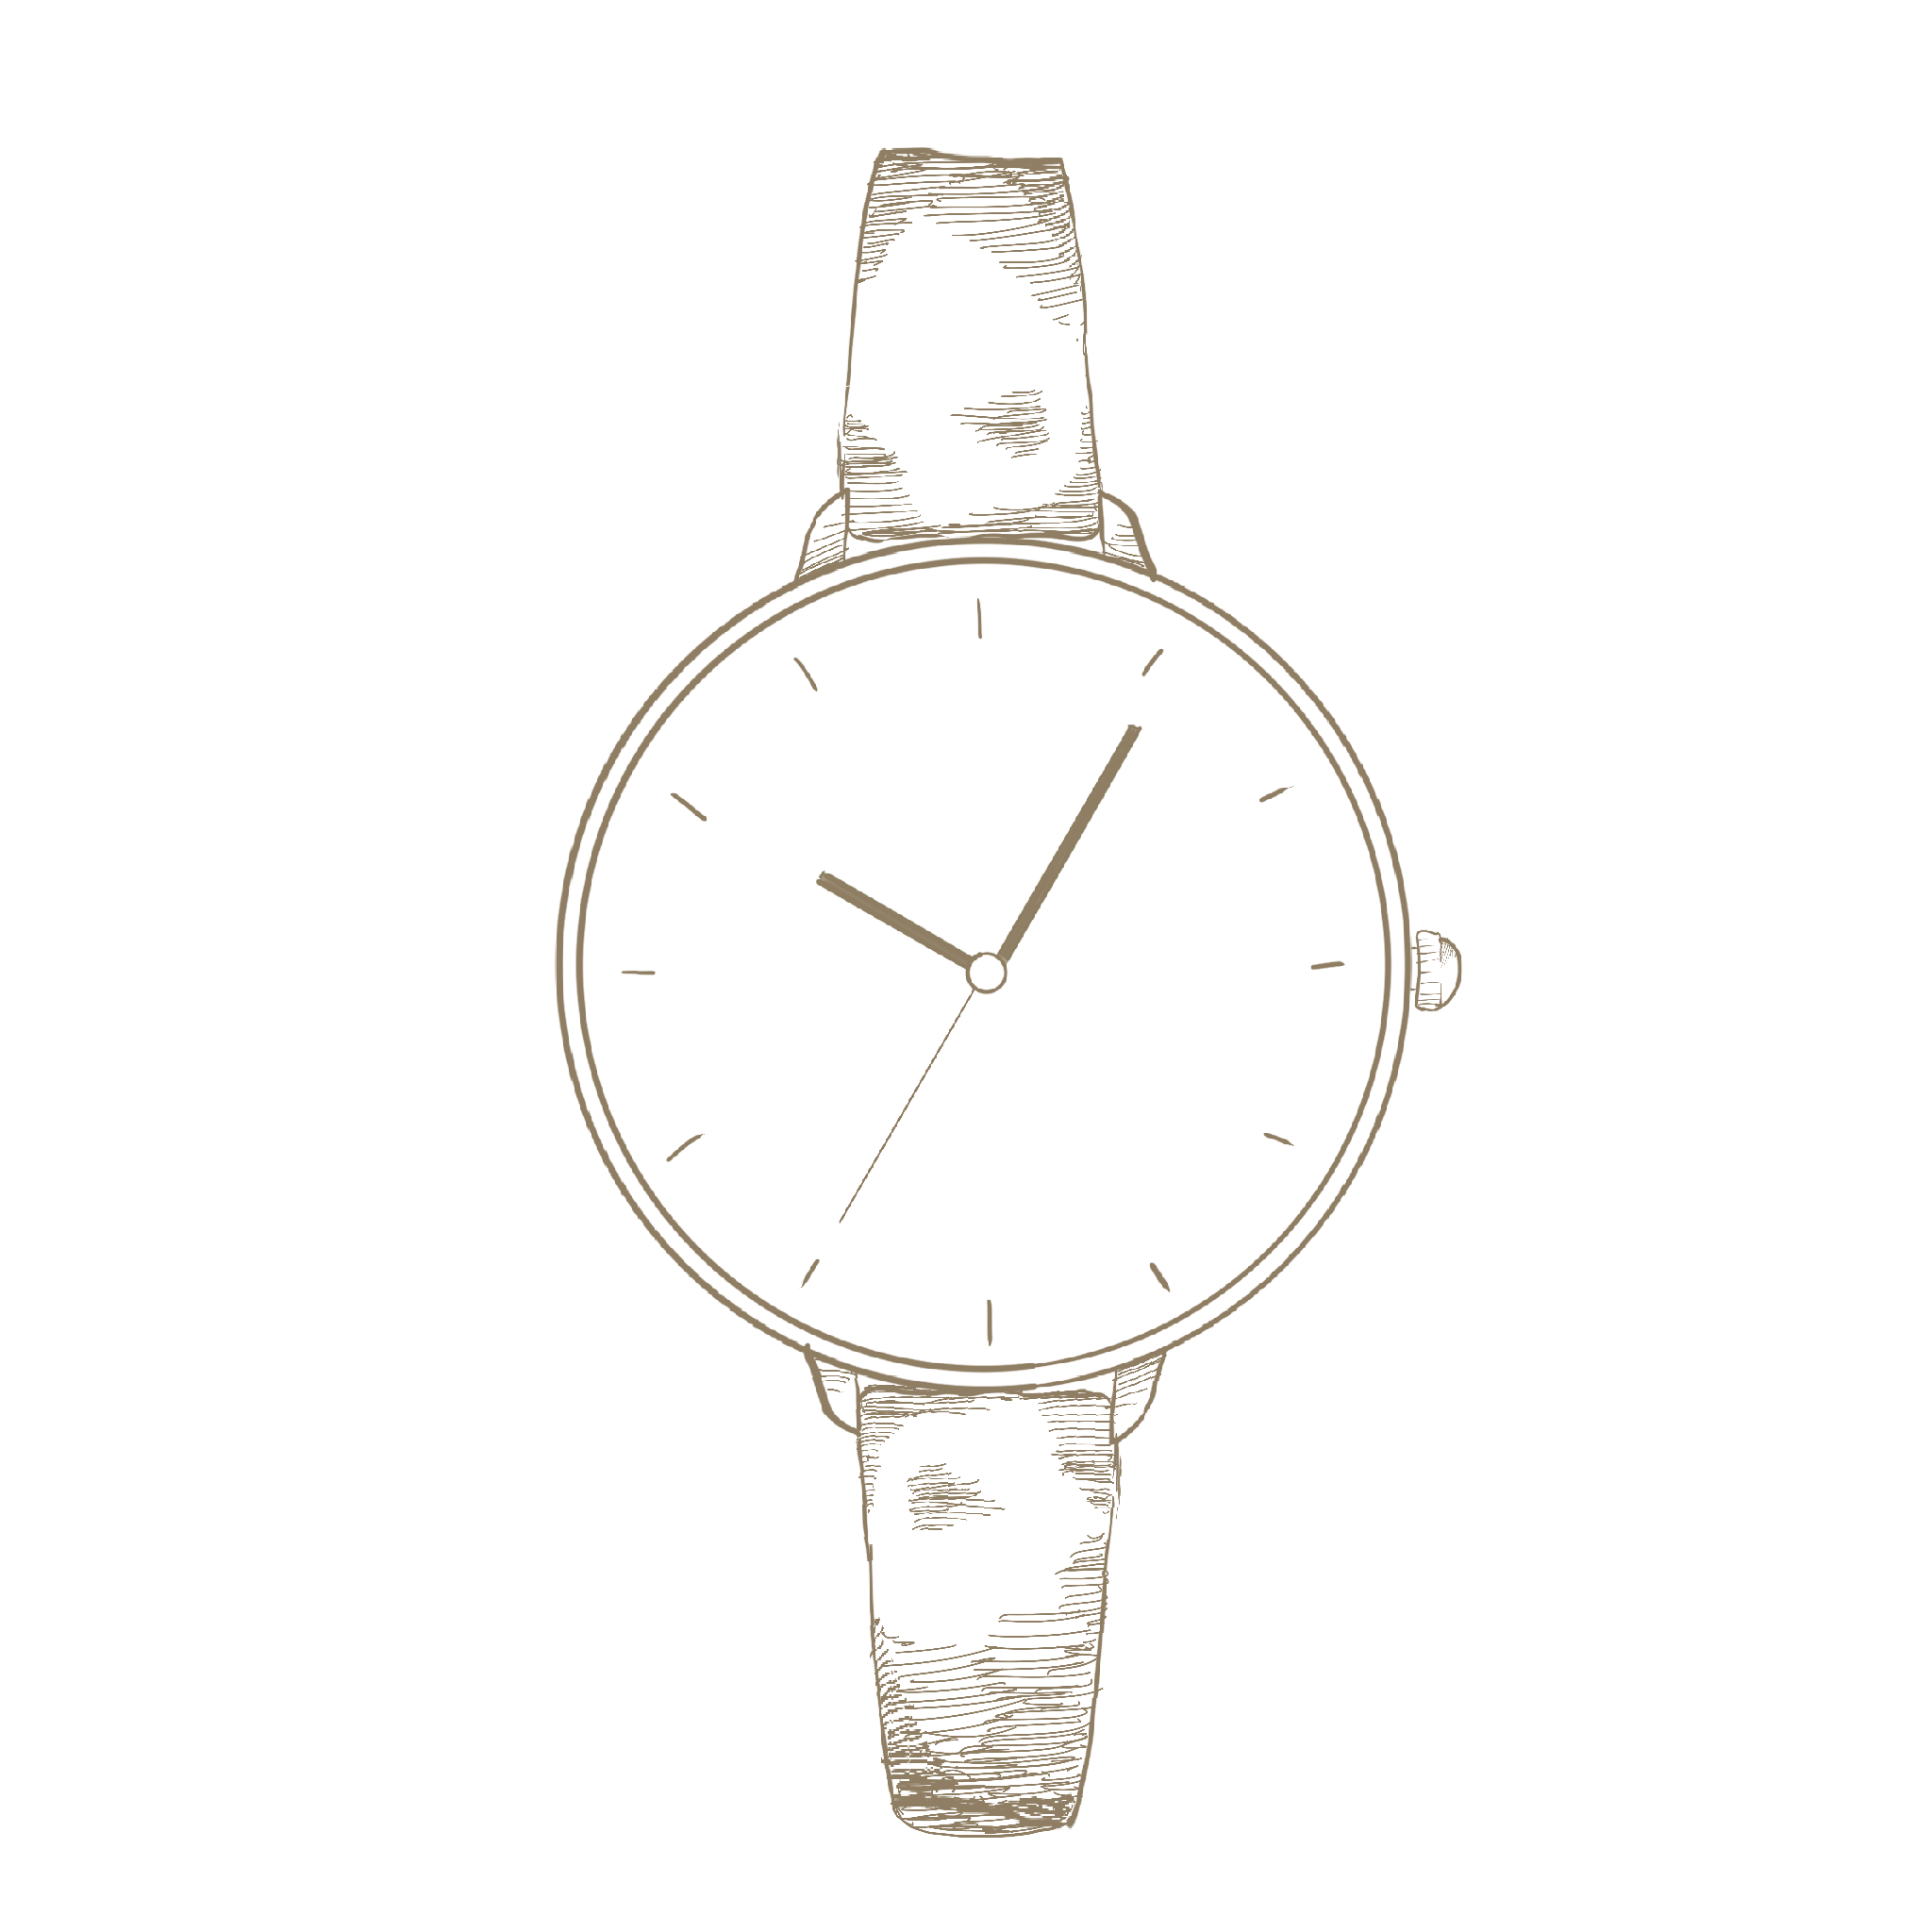 正面から見た腕時計 手書き風イラスト Anttiq 無料アンティークイラスト素材サイト